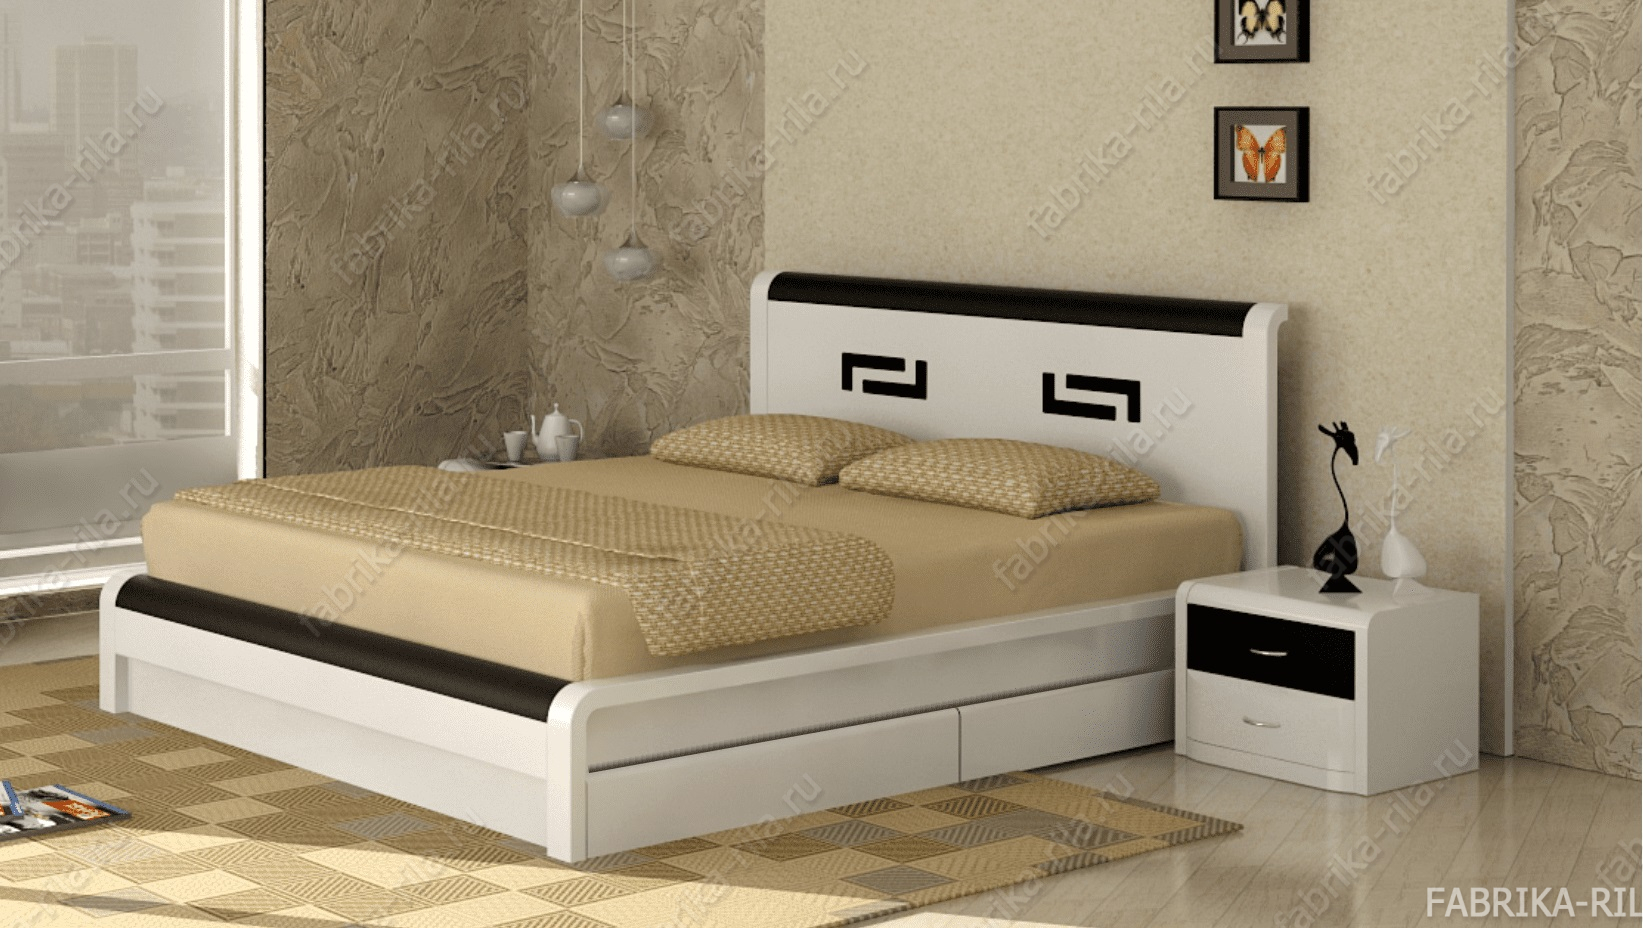 Кровать Arikama 3 — 140x190 см. из сосны